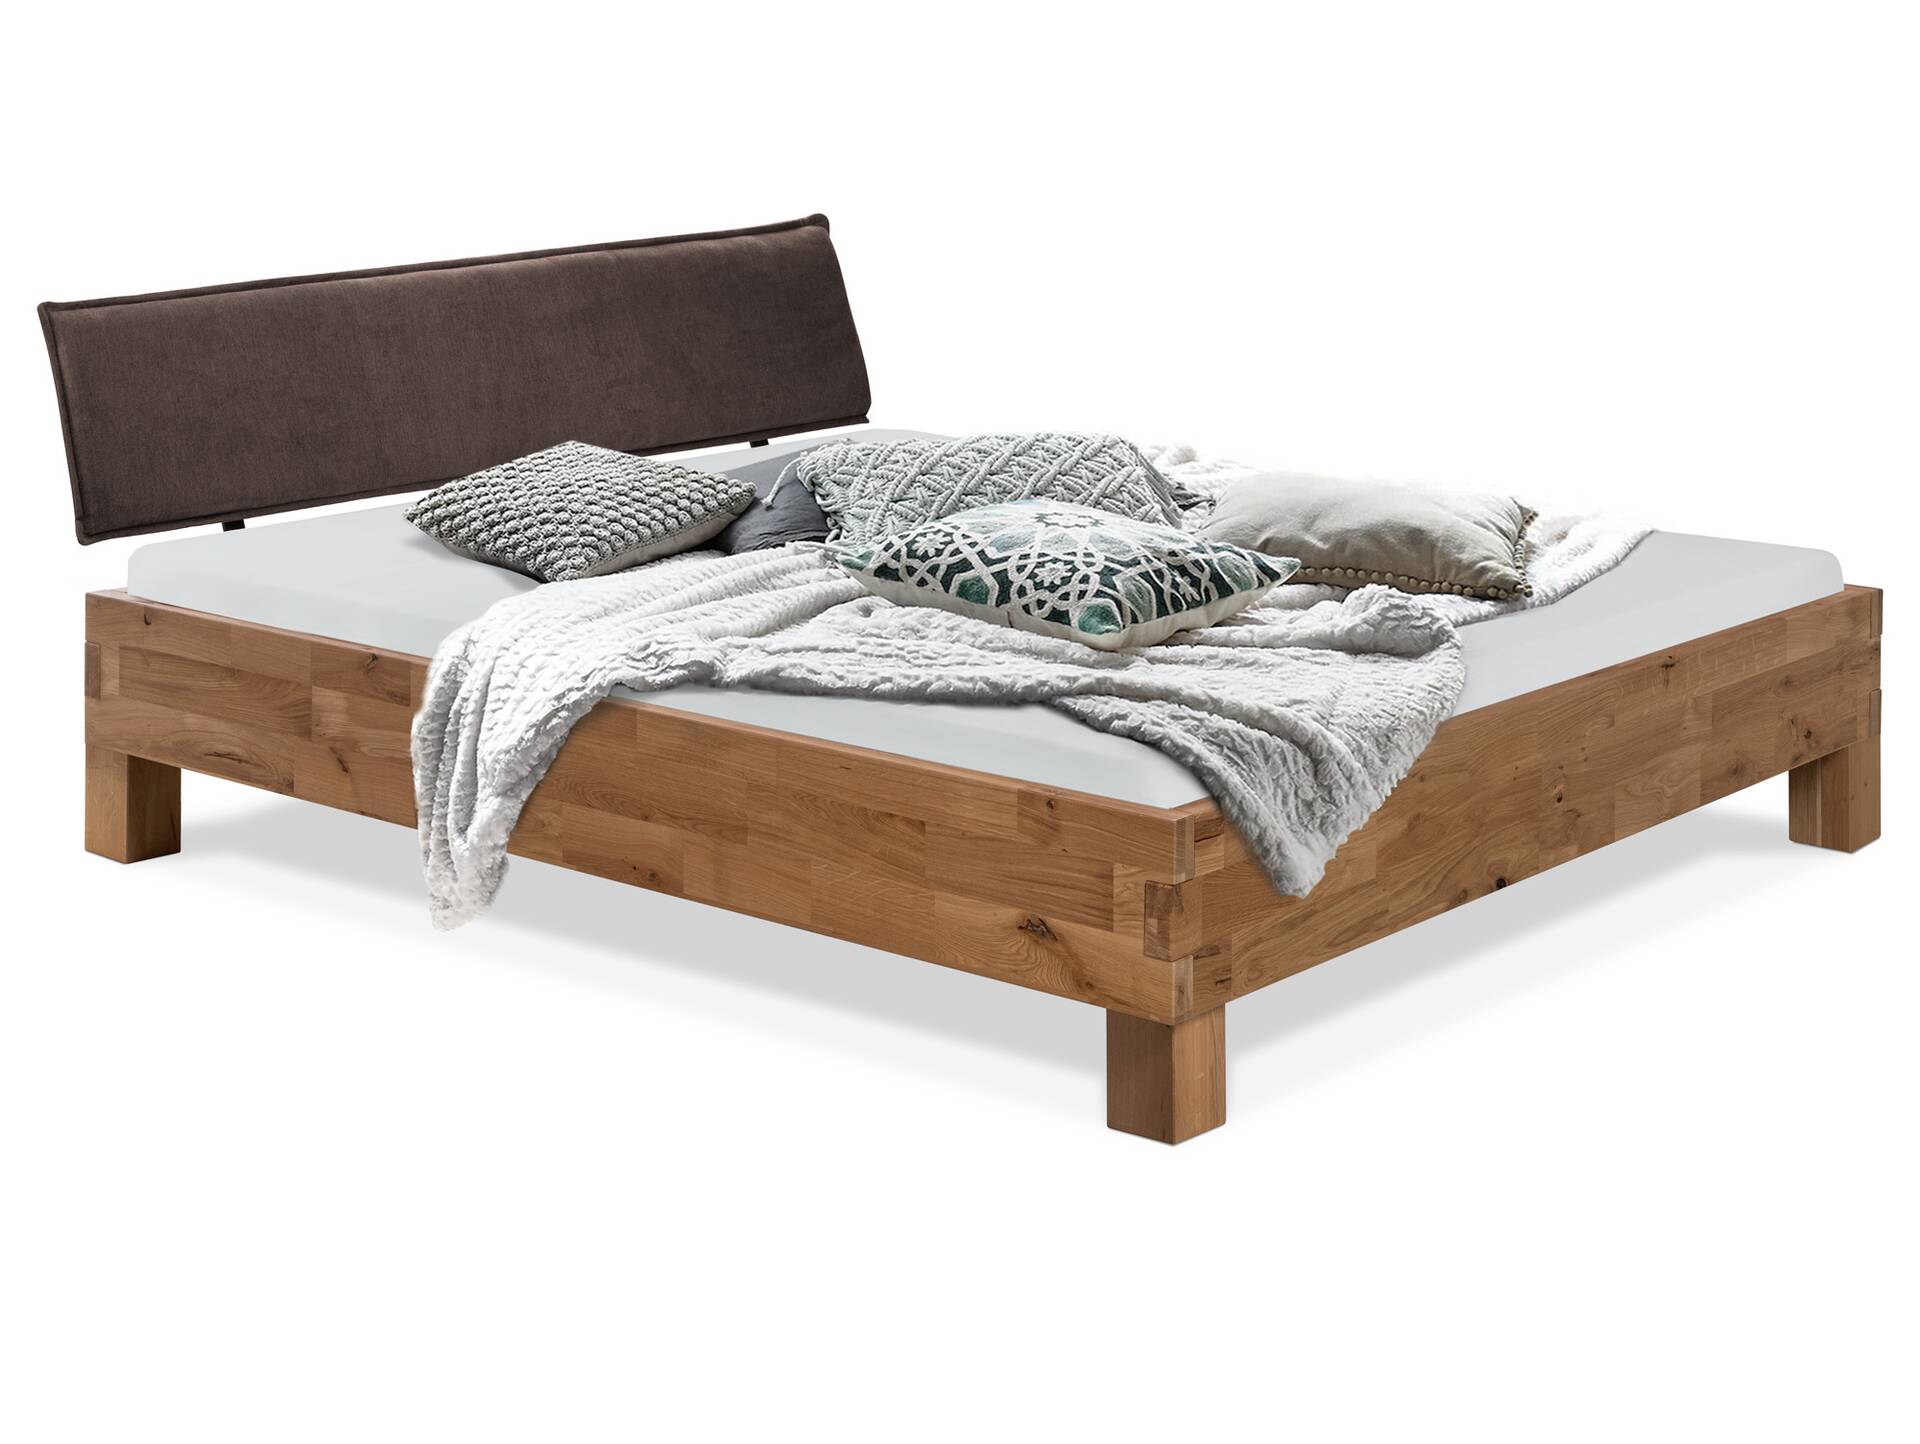 CORDINO 4-Fuß-Bett aus Eiche mit Polster-Kopfteil, Material Massivholz 180 x 200 cm | Eiche unbehandelt | Stoff Braun | gebürstet